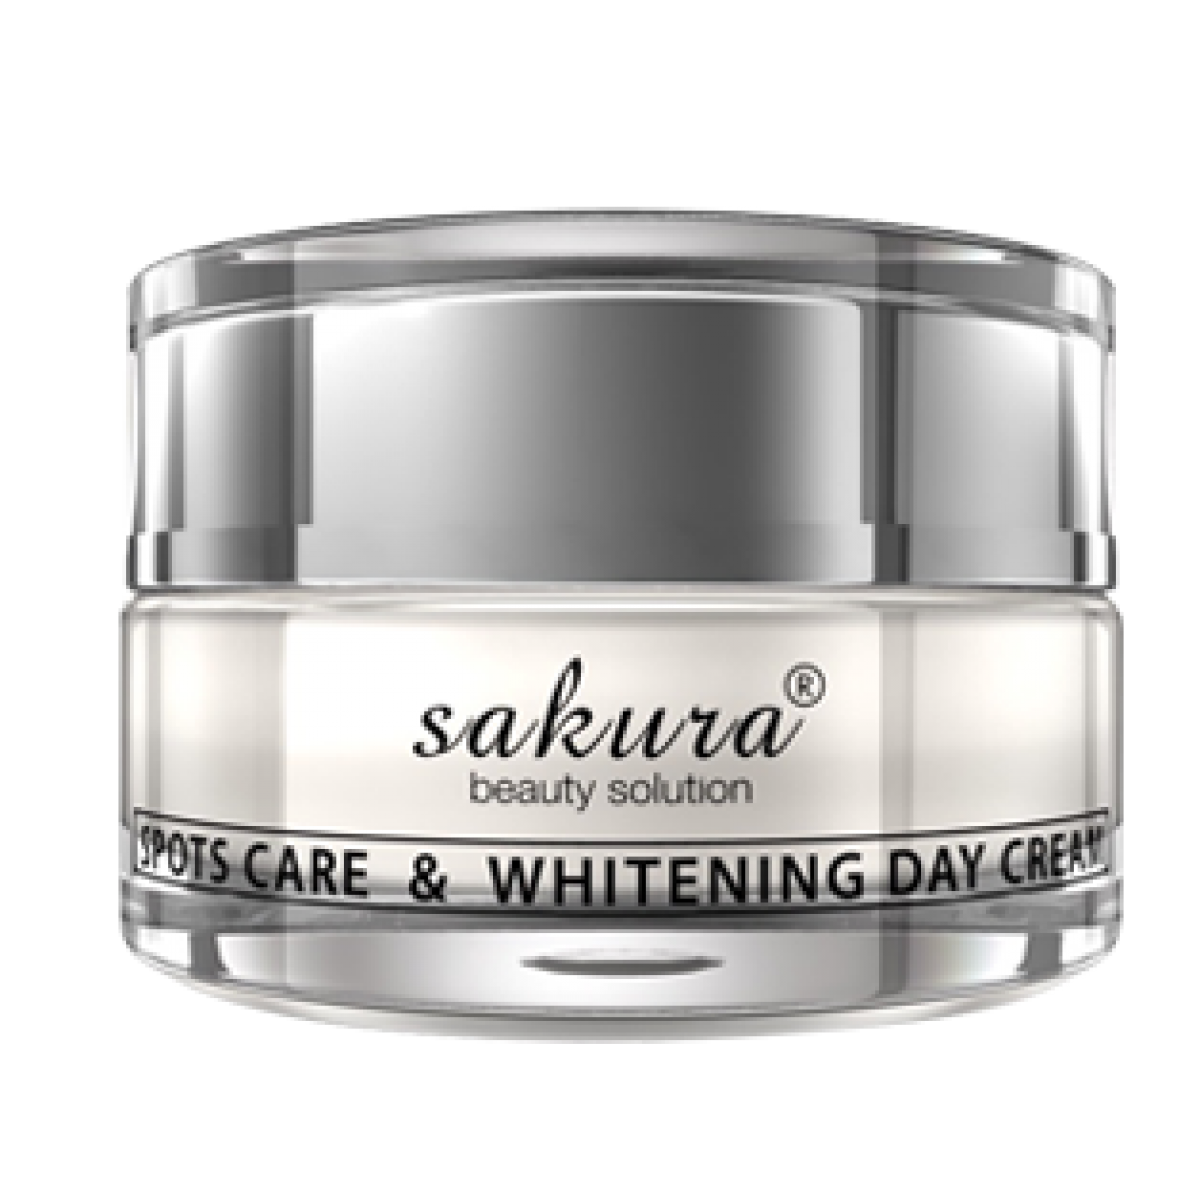 Sakura Spot Care Whitening Day Cream 39d87d99f2ee4e0ca51e380bdc401de1